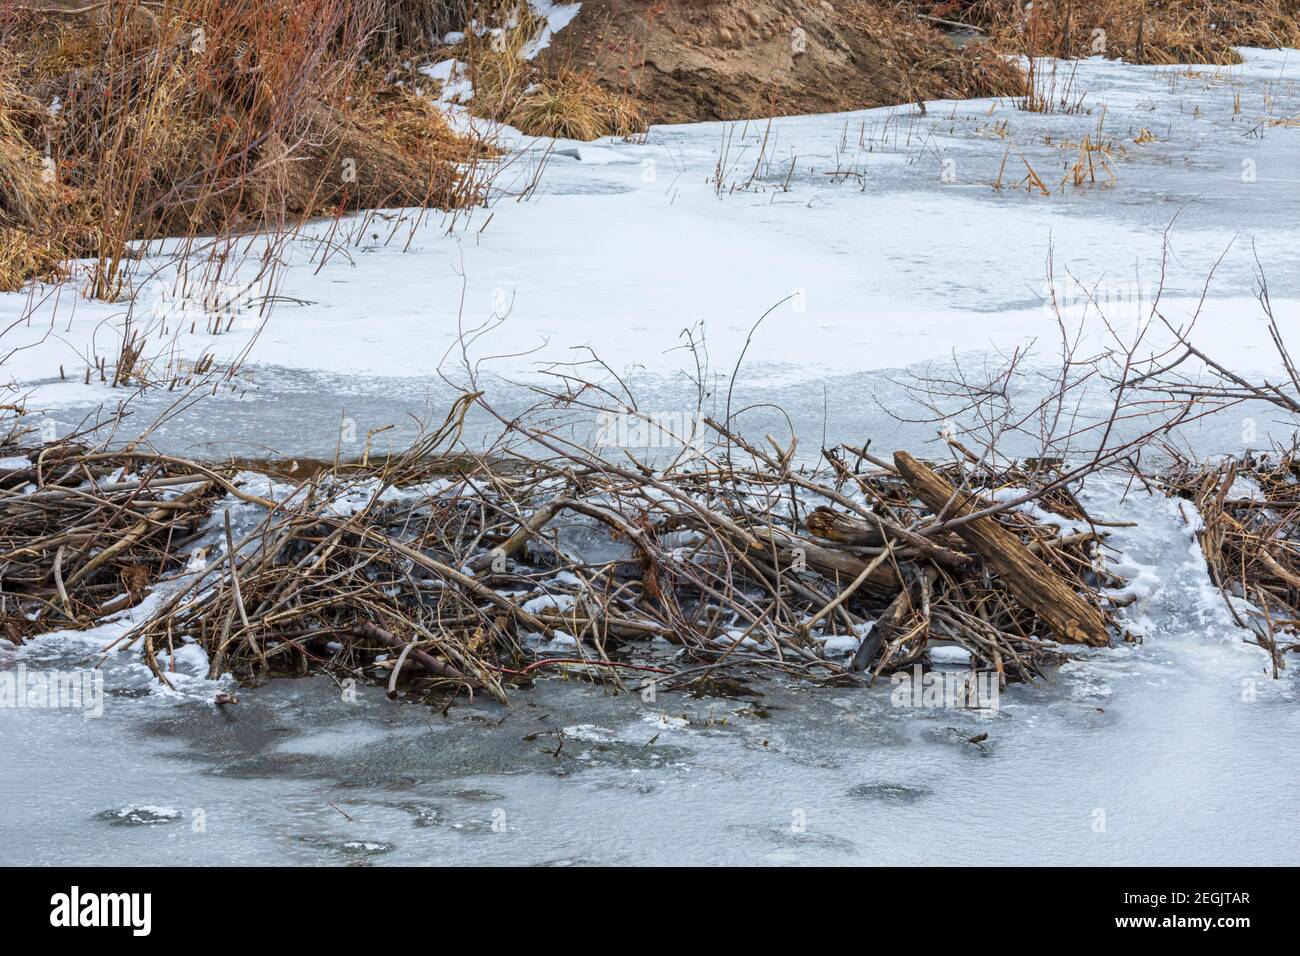 Una diga americana di Beaver in inverno. Foto mostra dove l'acqua era stata fuoriuscita sopra la diga ma si è congelata in termperature frigide, Castle Rock, Colorado USA. Foto Stock